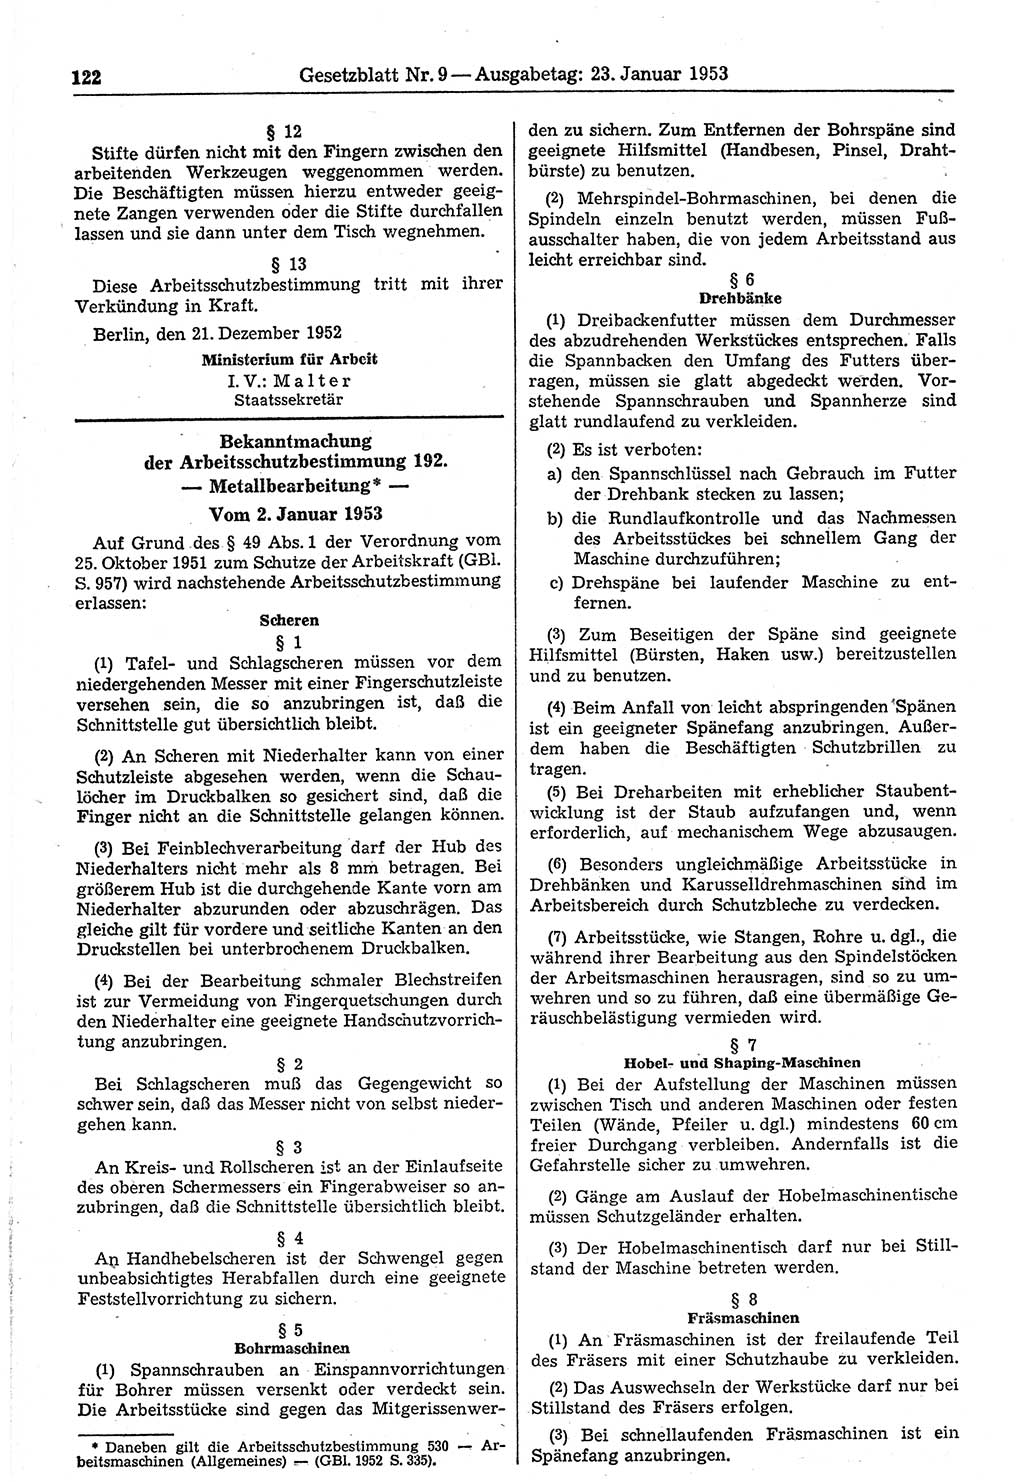 Gesetzblatt (GBl.) der Deutschen Demokratischen Republik (DDR) 1953, Seite 122 (GBl. DDR 1953, S. 122)